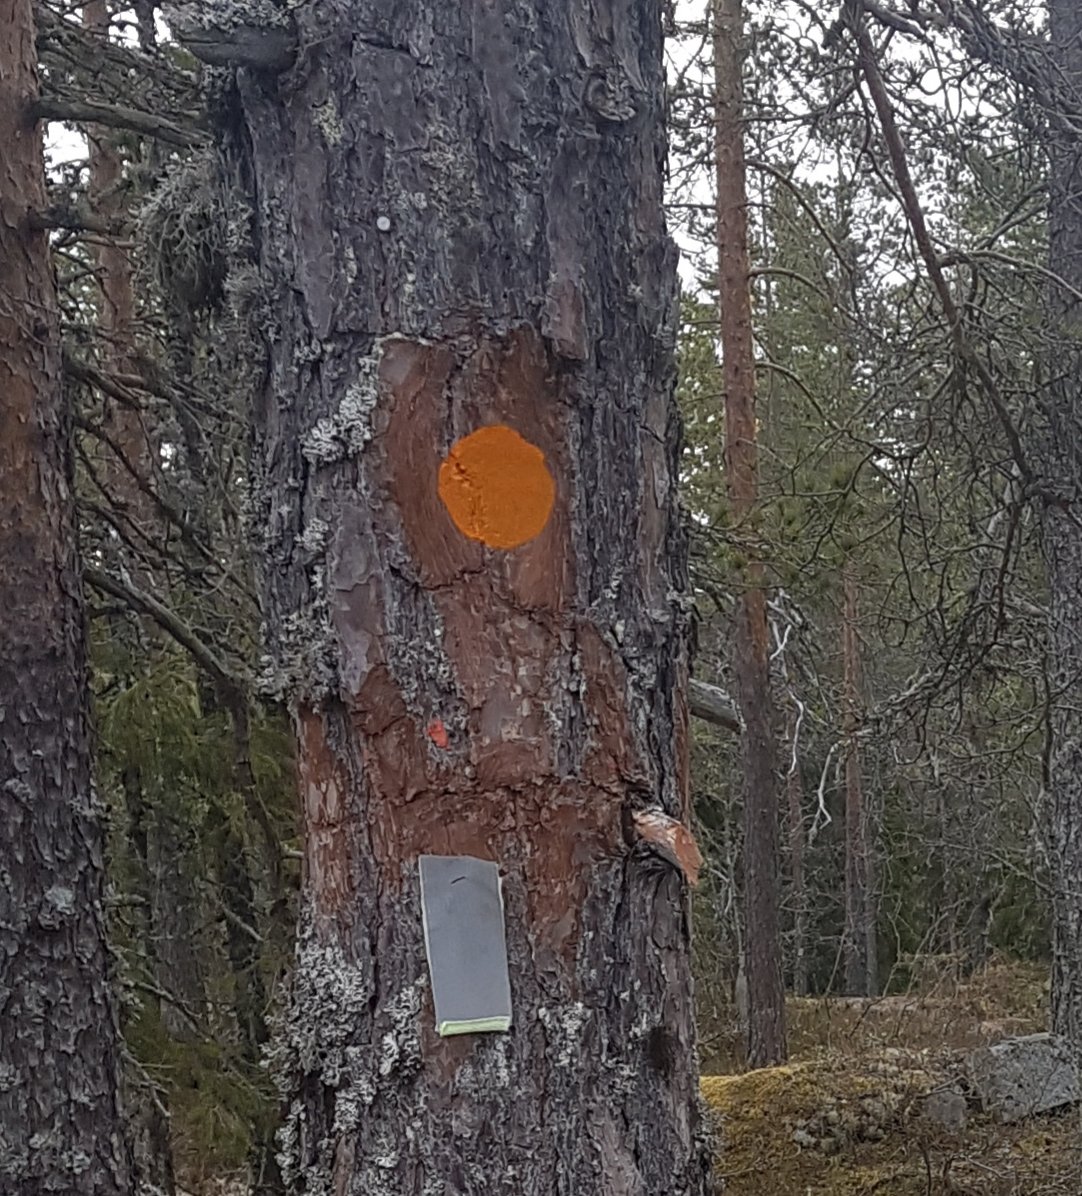 Orange ledmarkering målad på träd